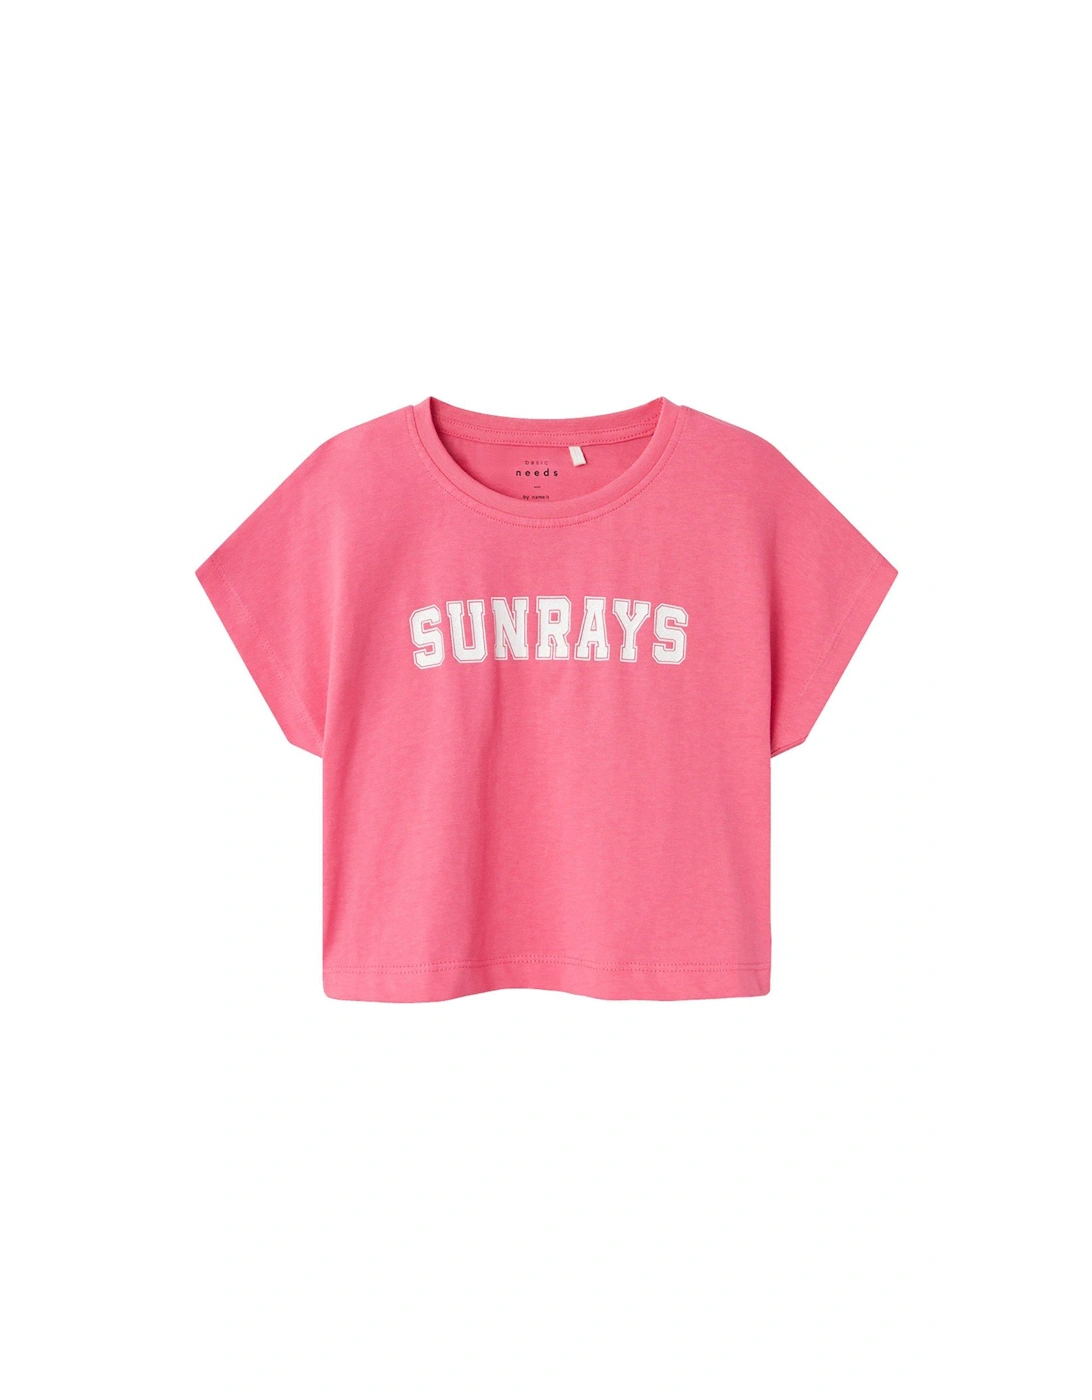 Girls Sunrays Cropped Short Sleeve Tshirt - Camelia Rose, 2 of 1